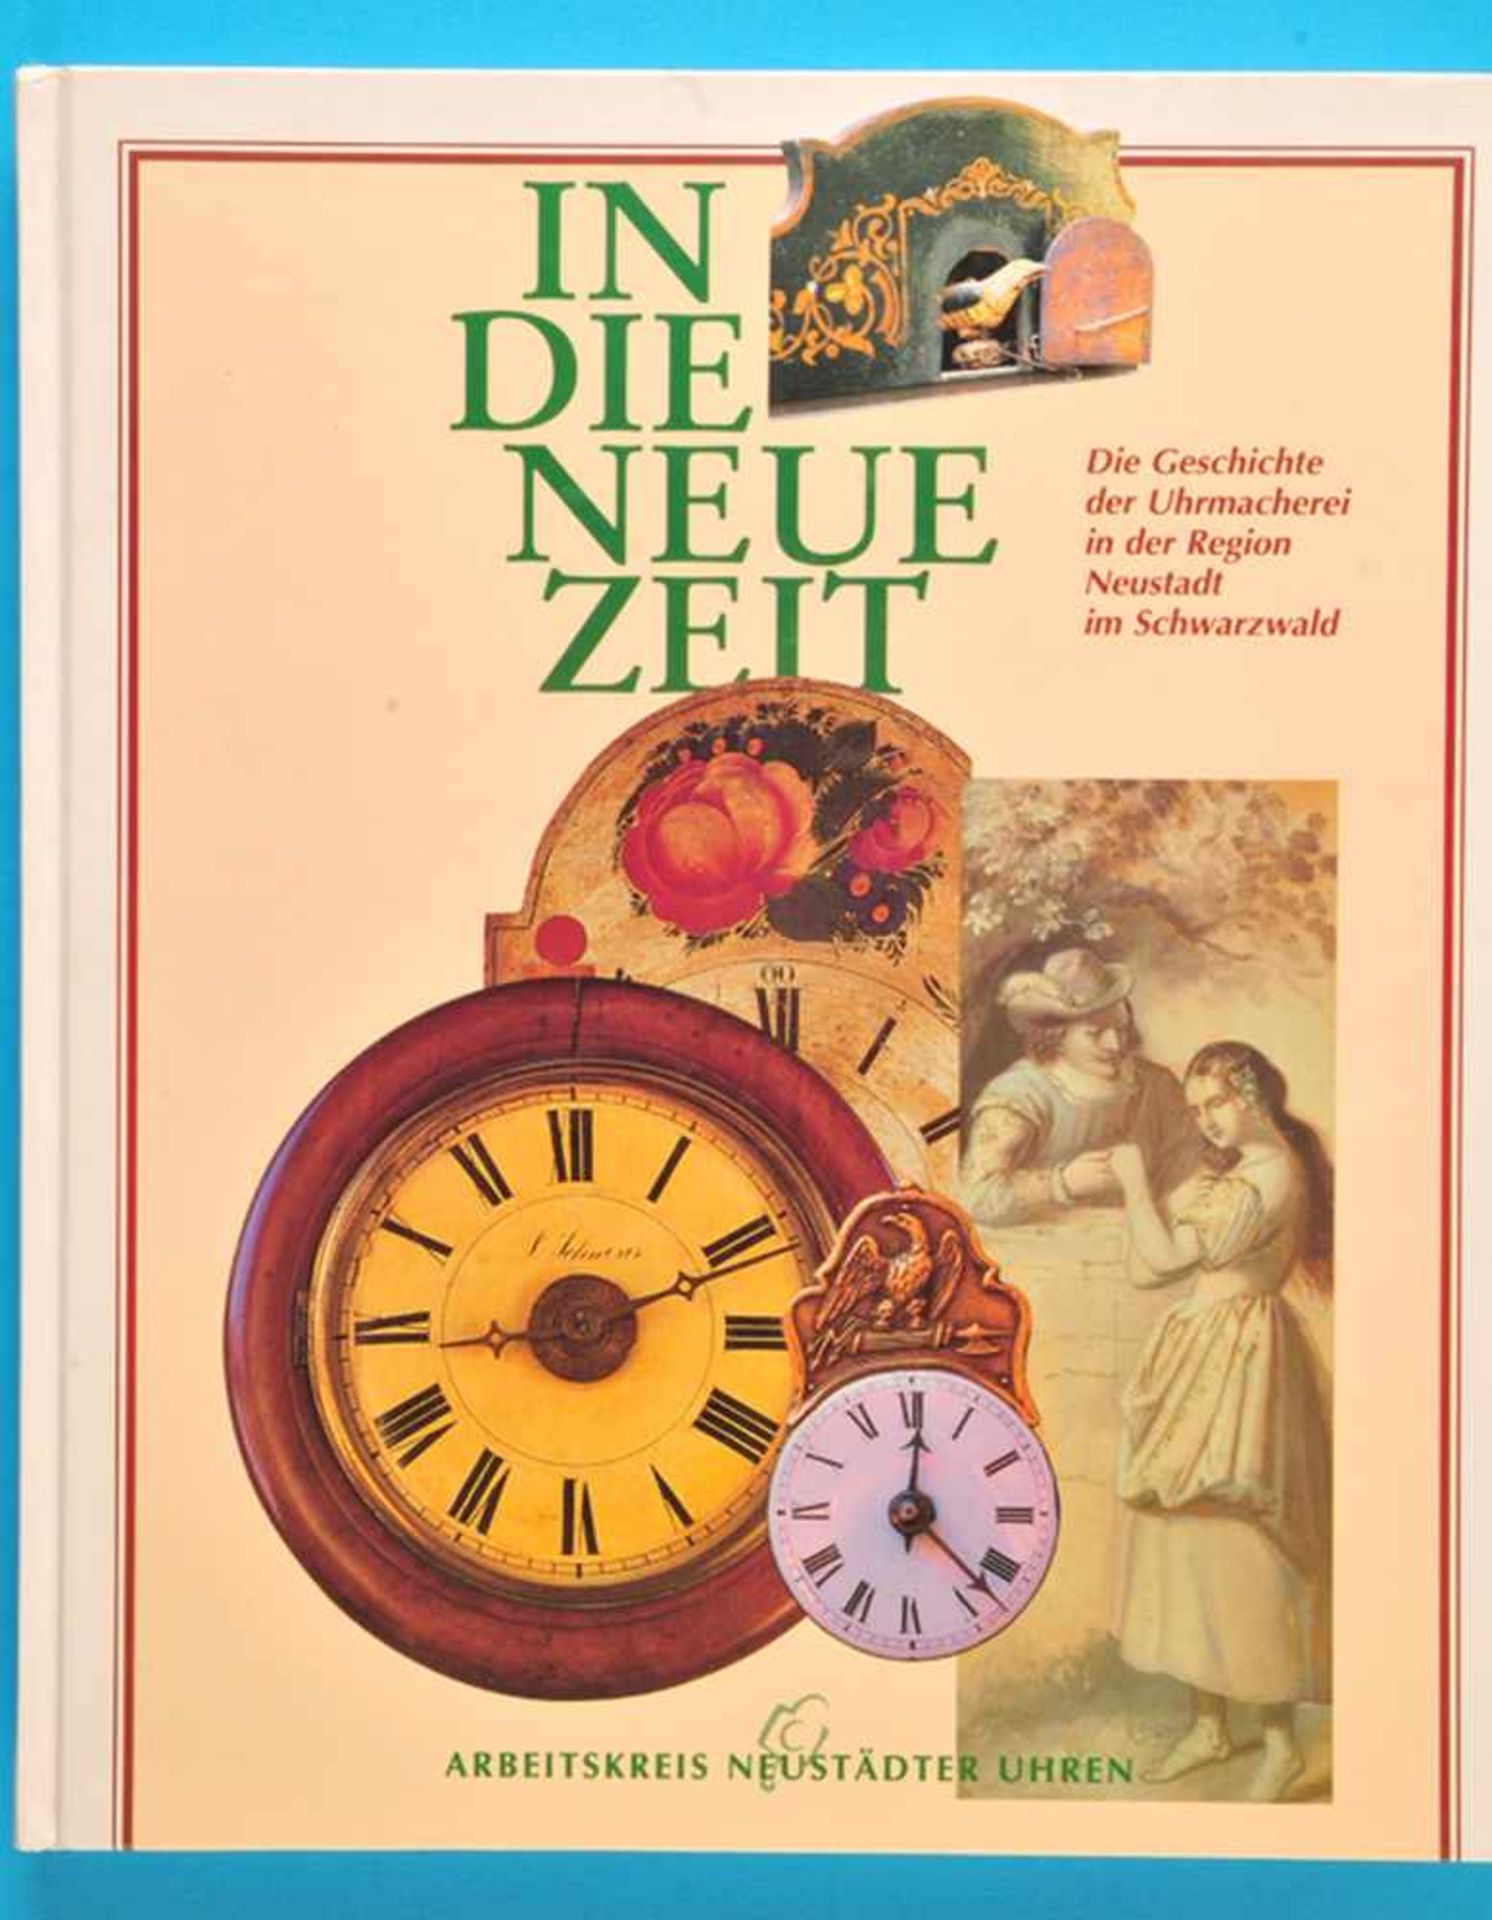 Arbeitskreis Neustädter Uhren, Das Buch zur Ausstellung: In die neue Zeit, Die Geschichte der